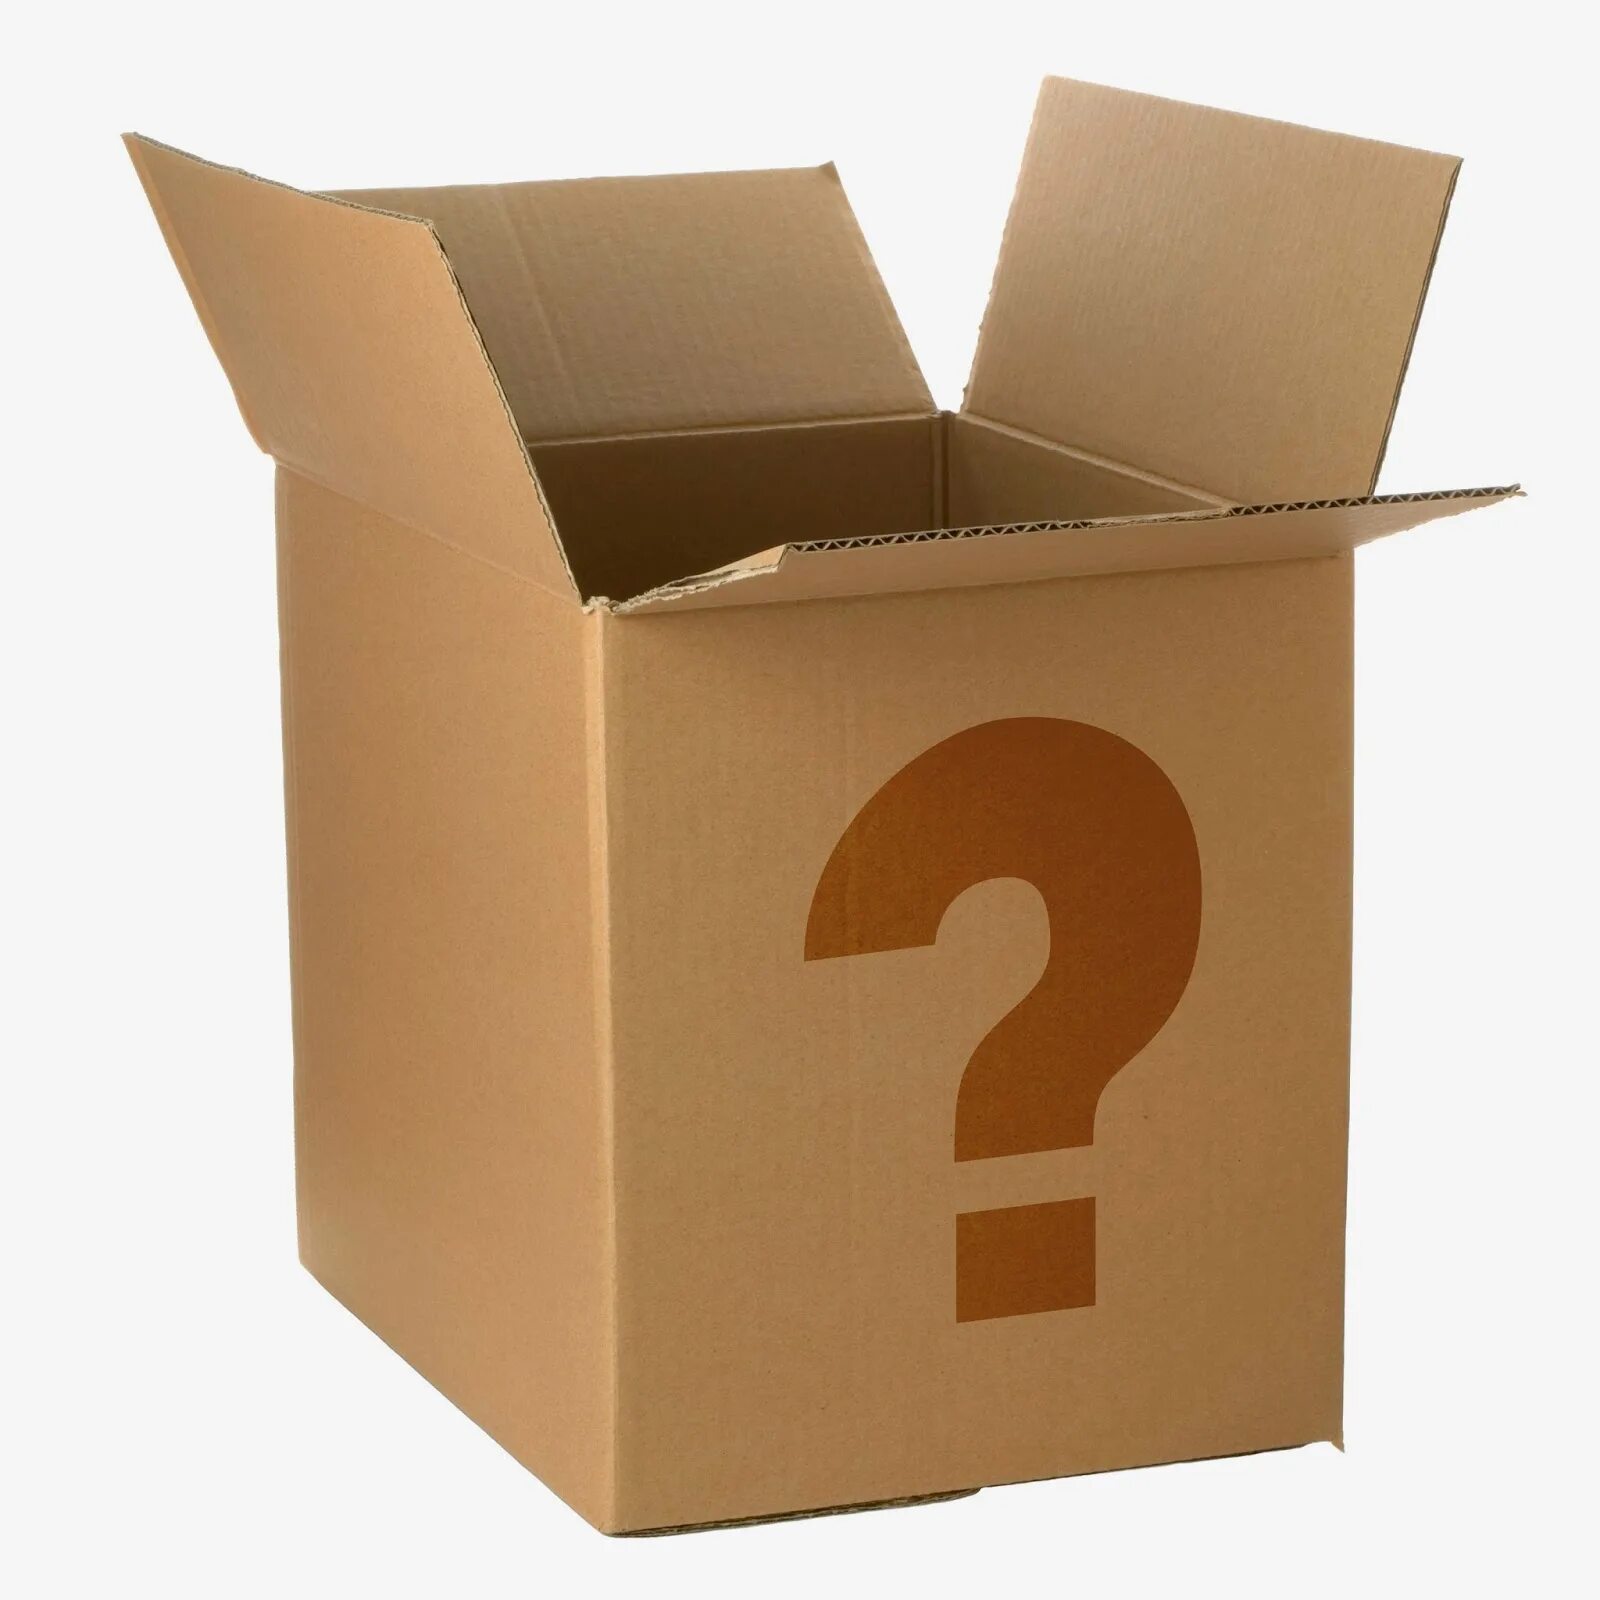 Что в коробке. Знак картонной коробки. Ящик с вопросительными знаками. Коробка с вопросом. Коробка высокая.